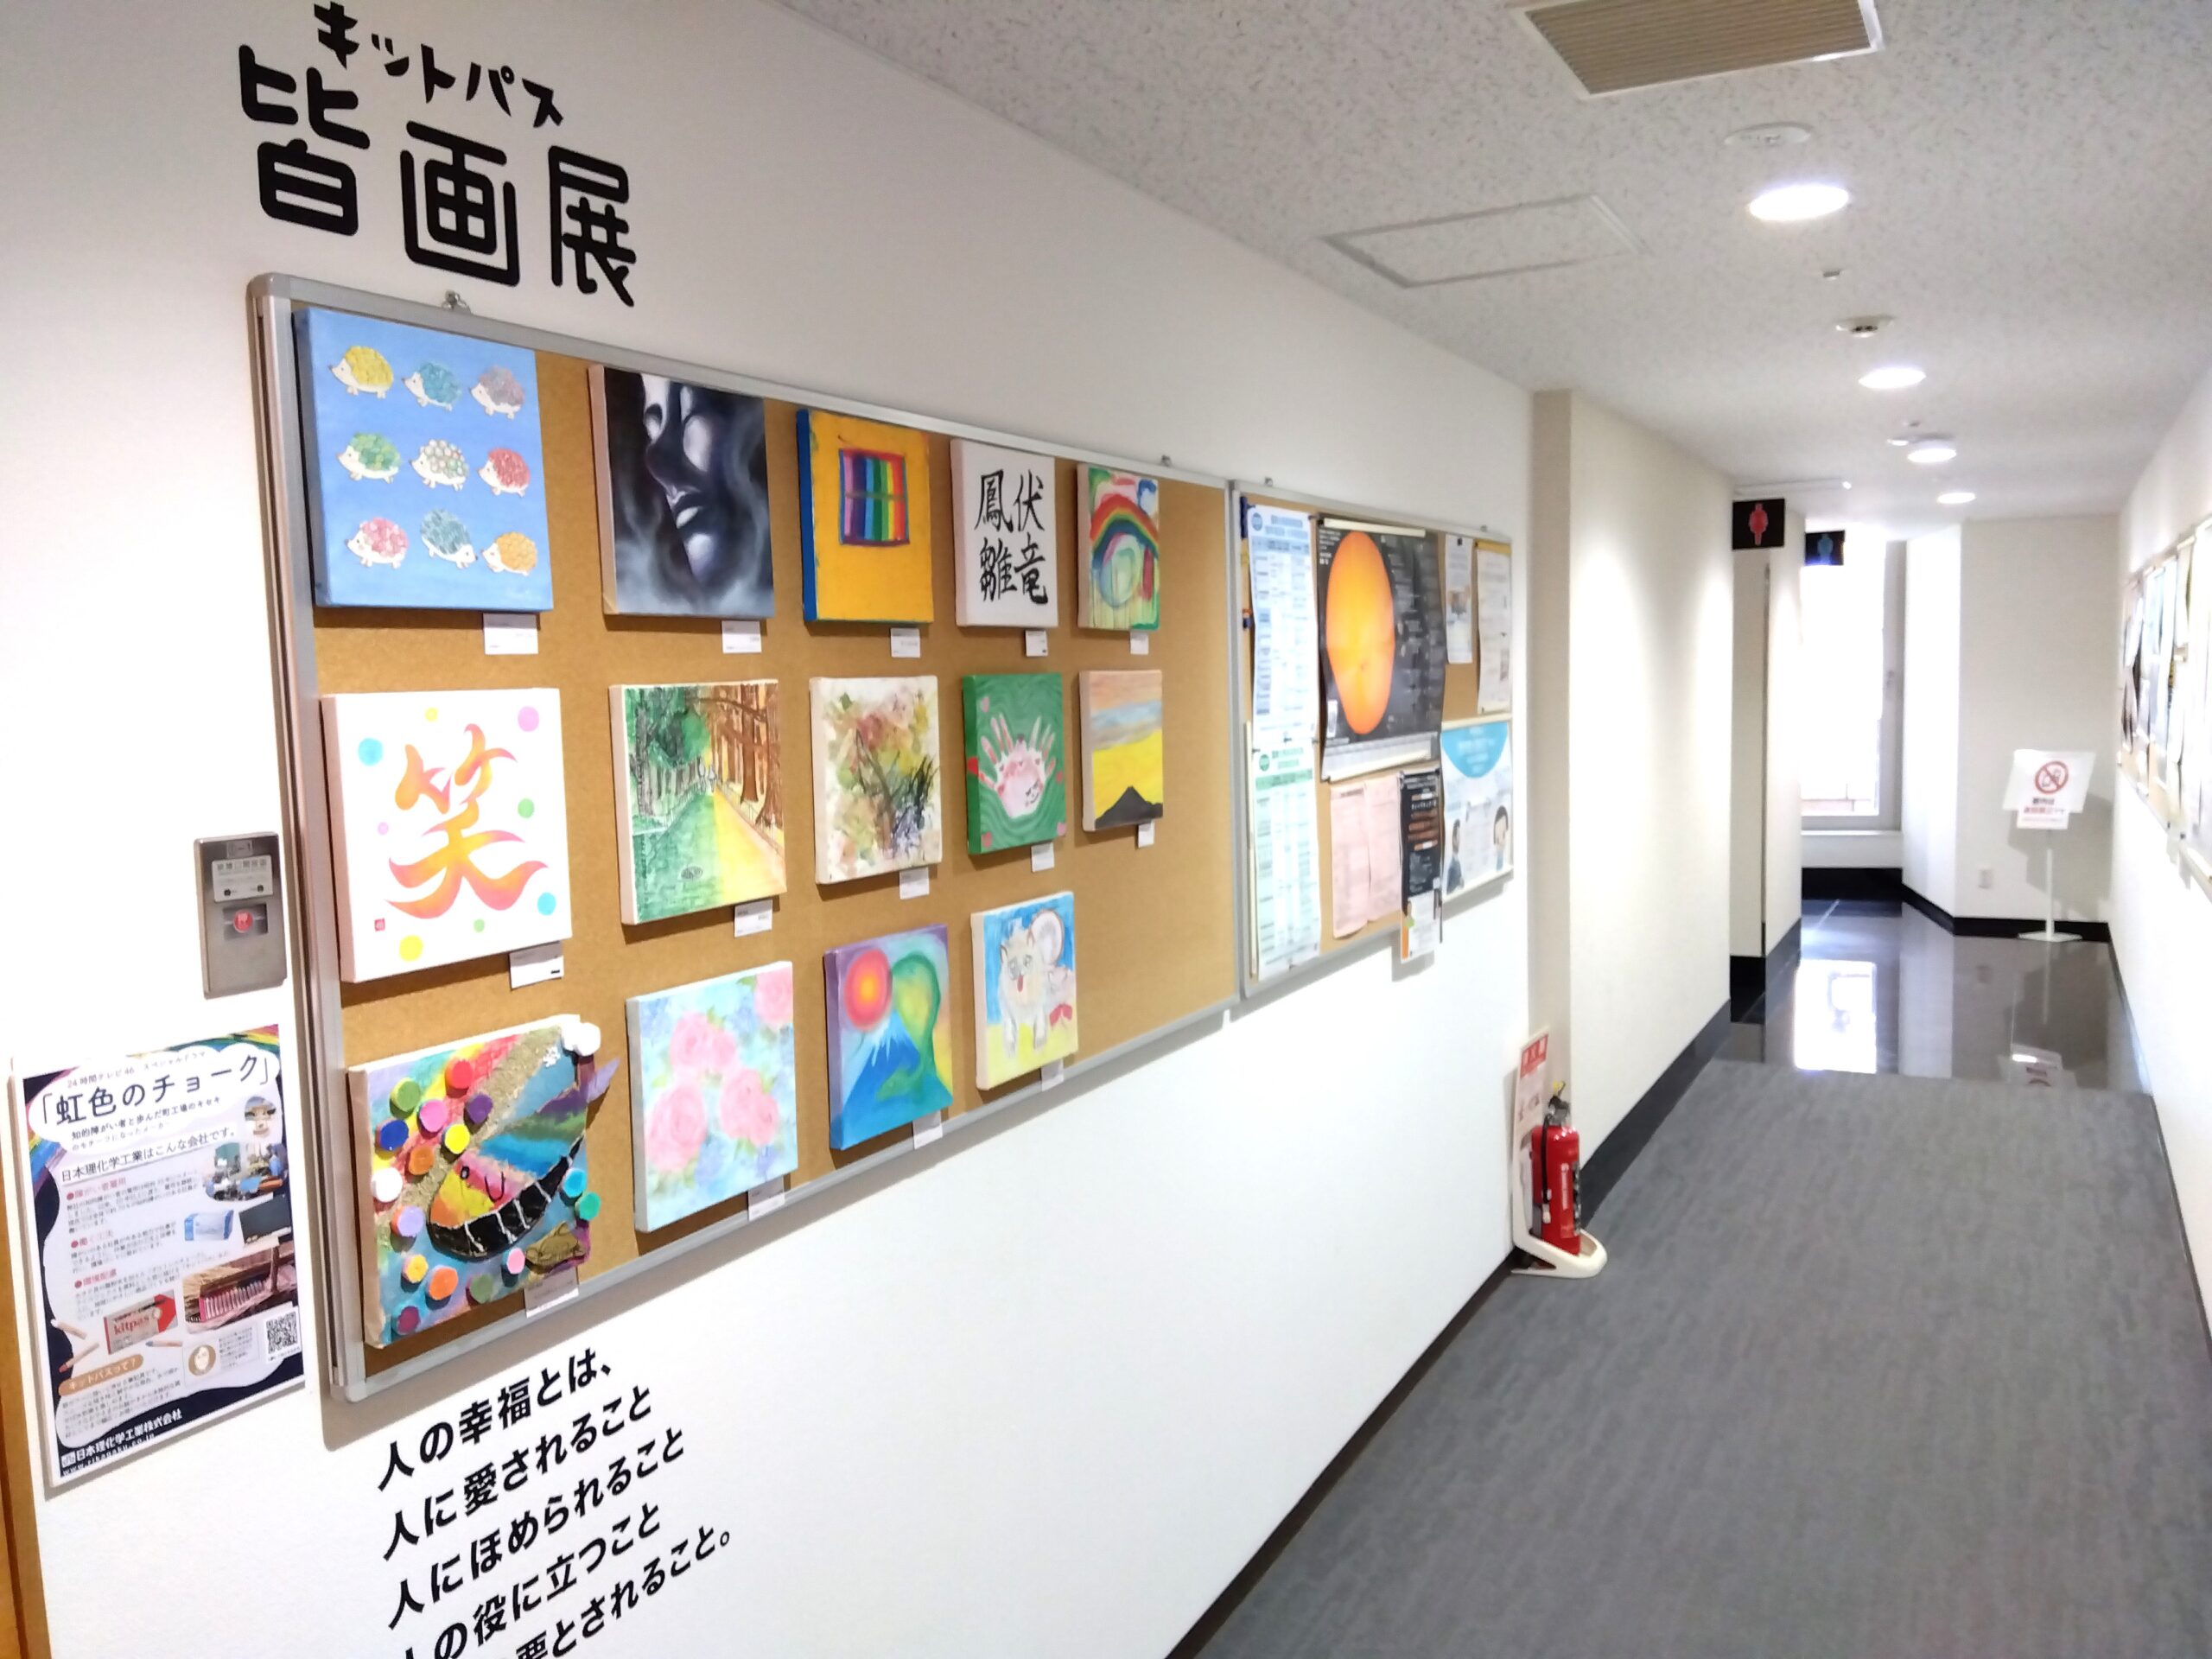 キットパス皆画展 県立川崎図書館と共同展示を開始